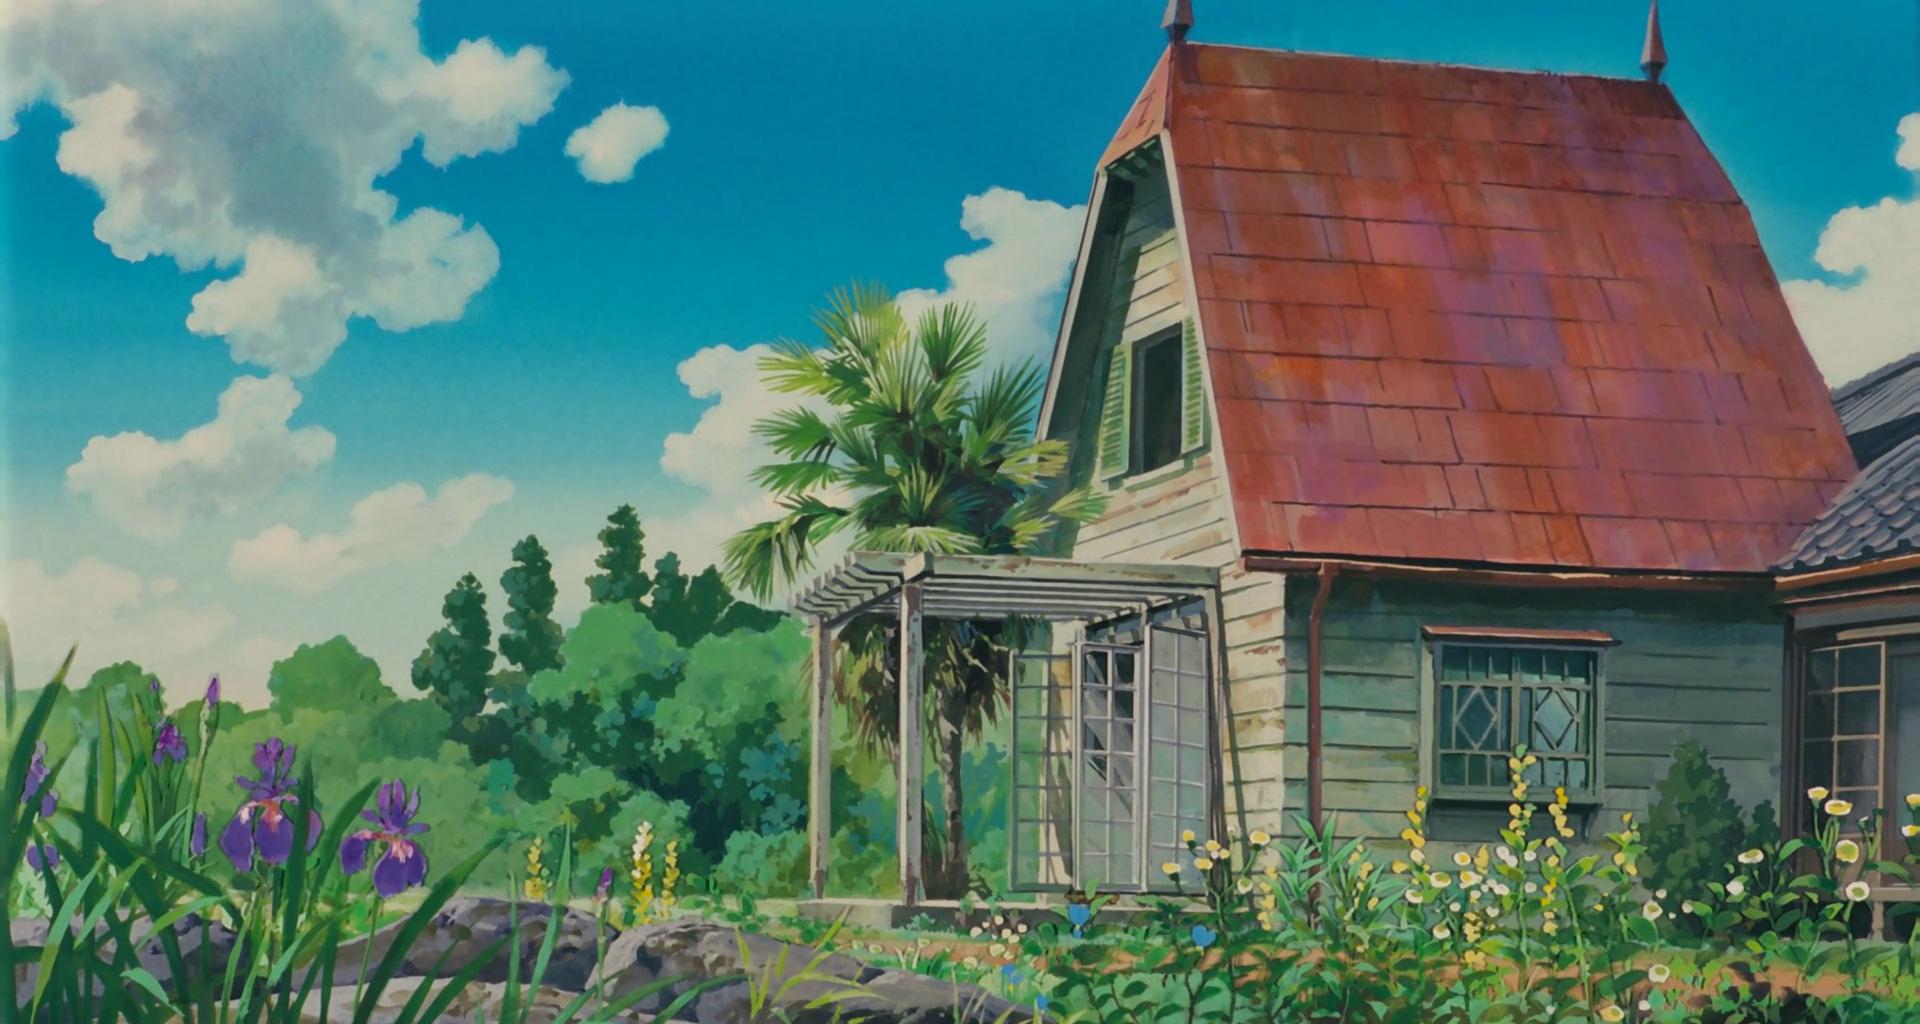 Studio Ghibli Wallpaper | 1920x1024 | ID:46398